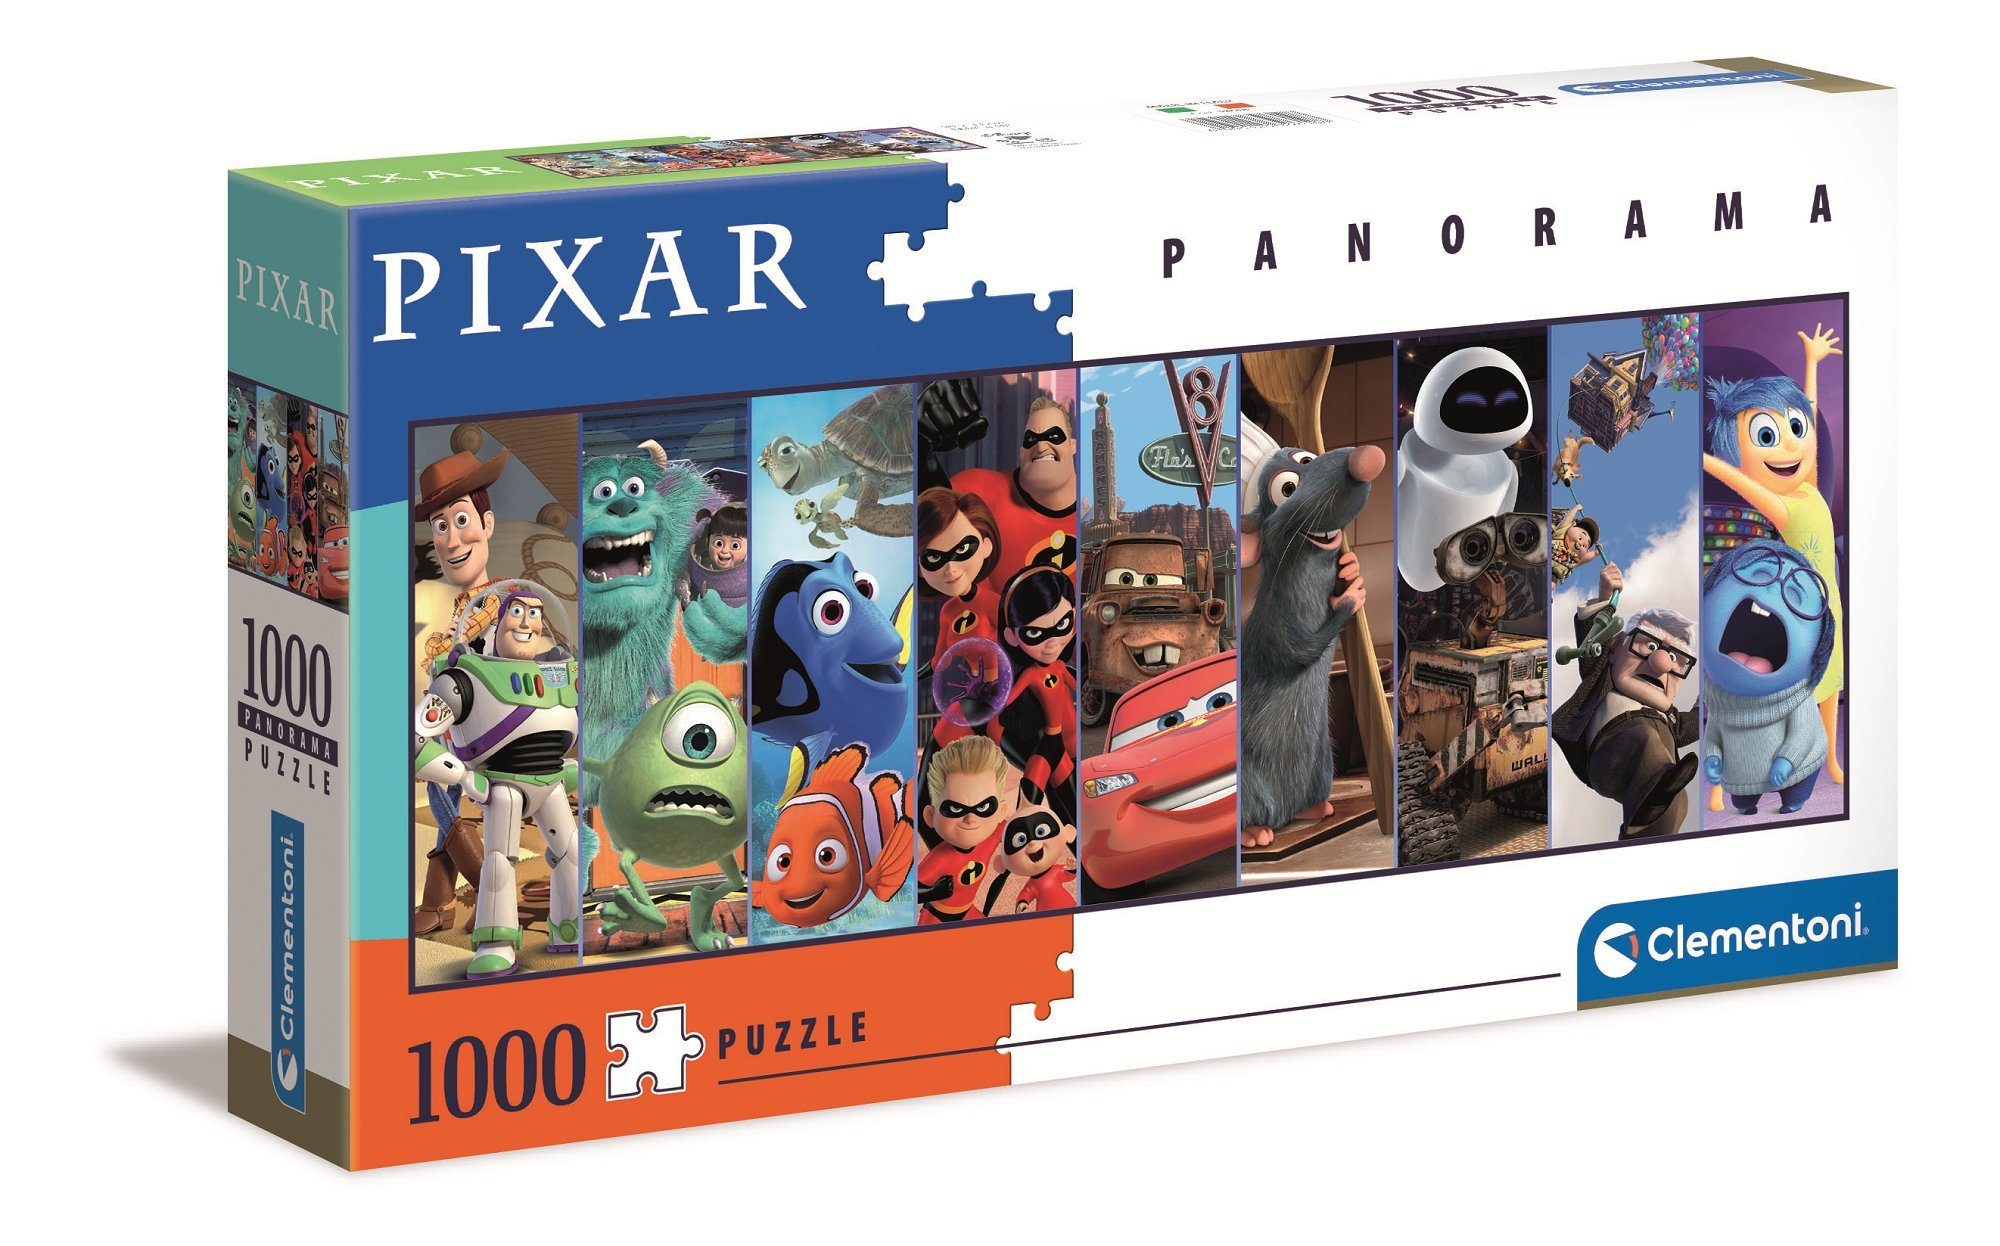 Clementoni® Puzzle 39610 Disney/ Pixar Puzzleteile Teile 1000 1000 Puzzle, Panorama